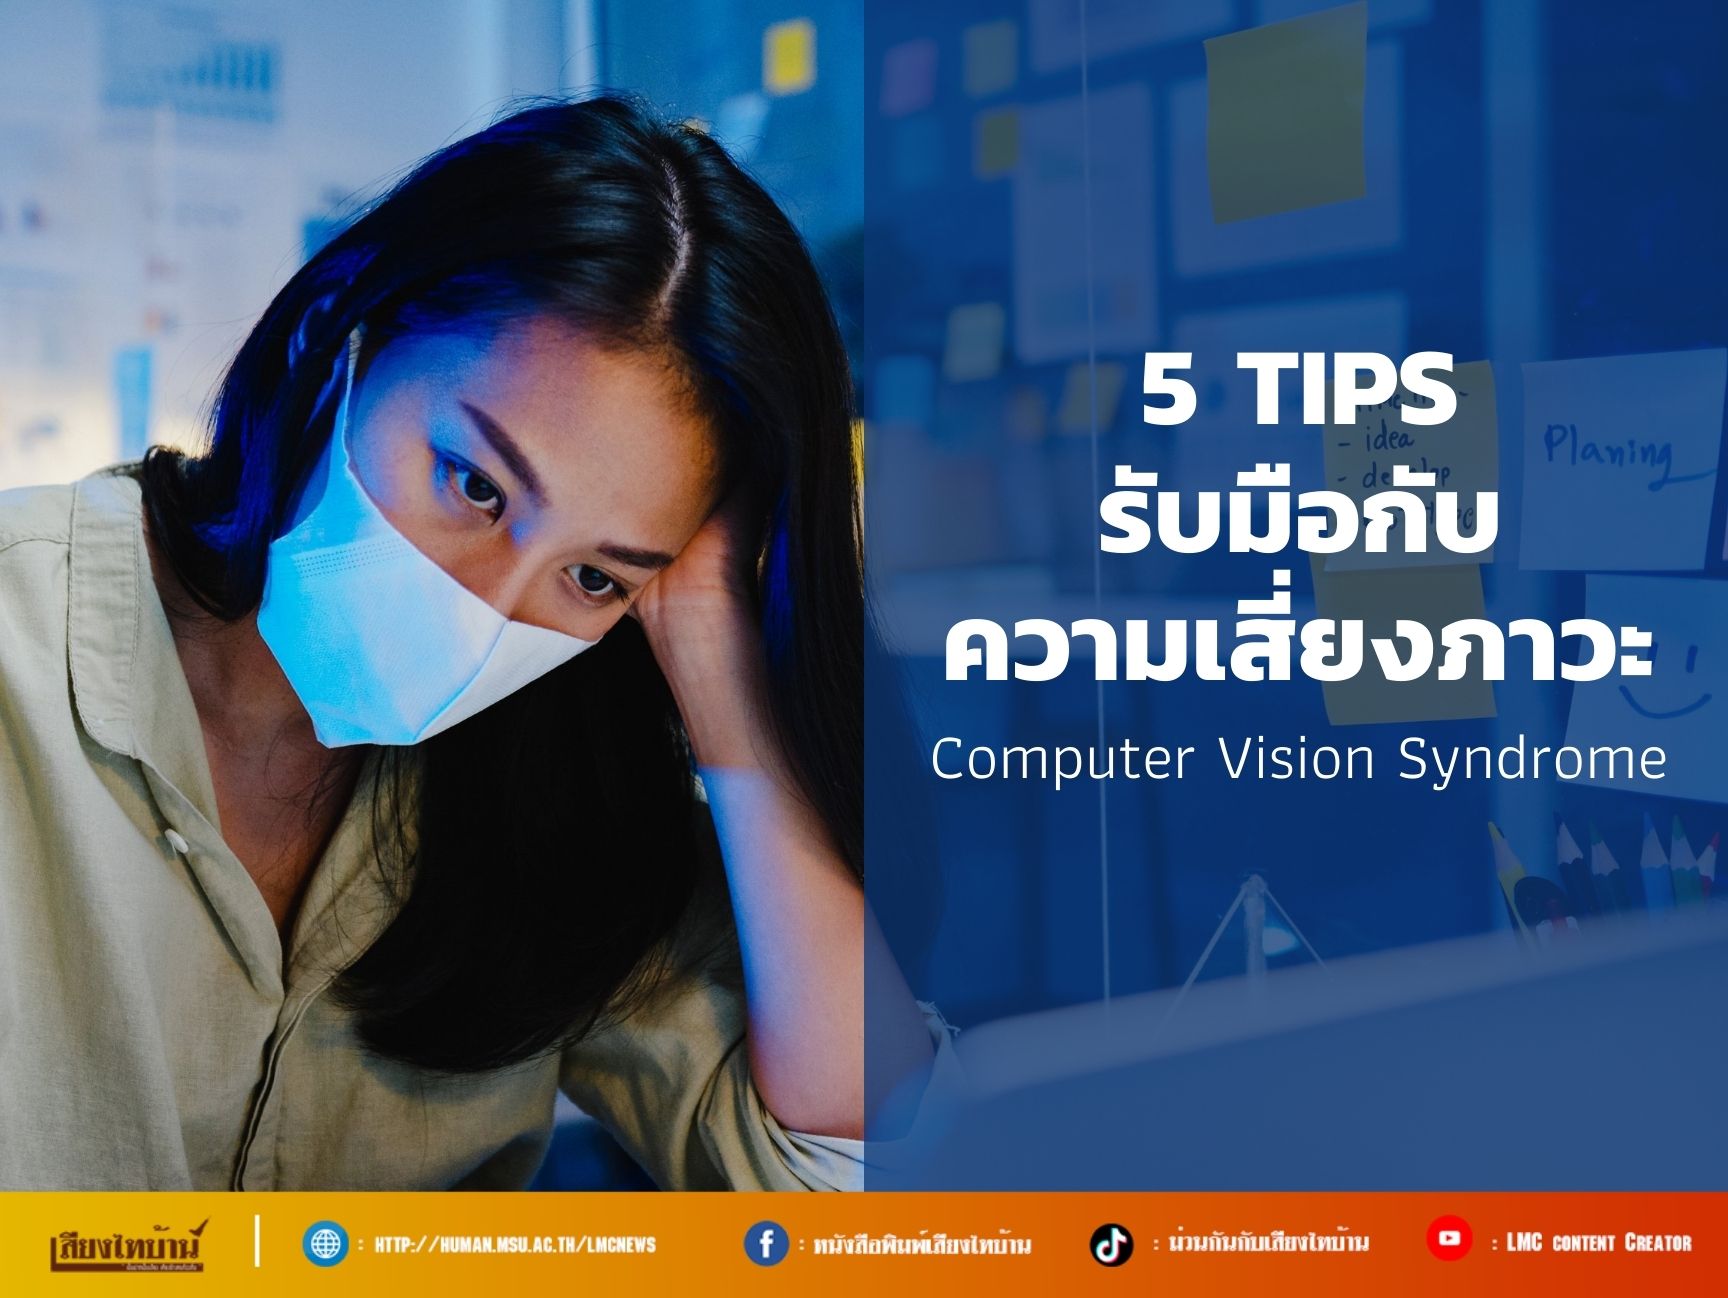 5 Tips รับมือกับความเสี่ยงภาวะ Computer Vision Syndrome